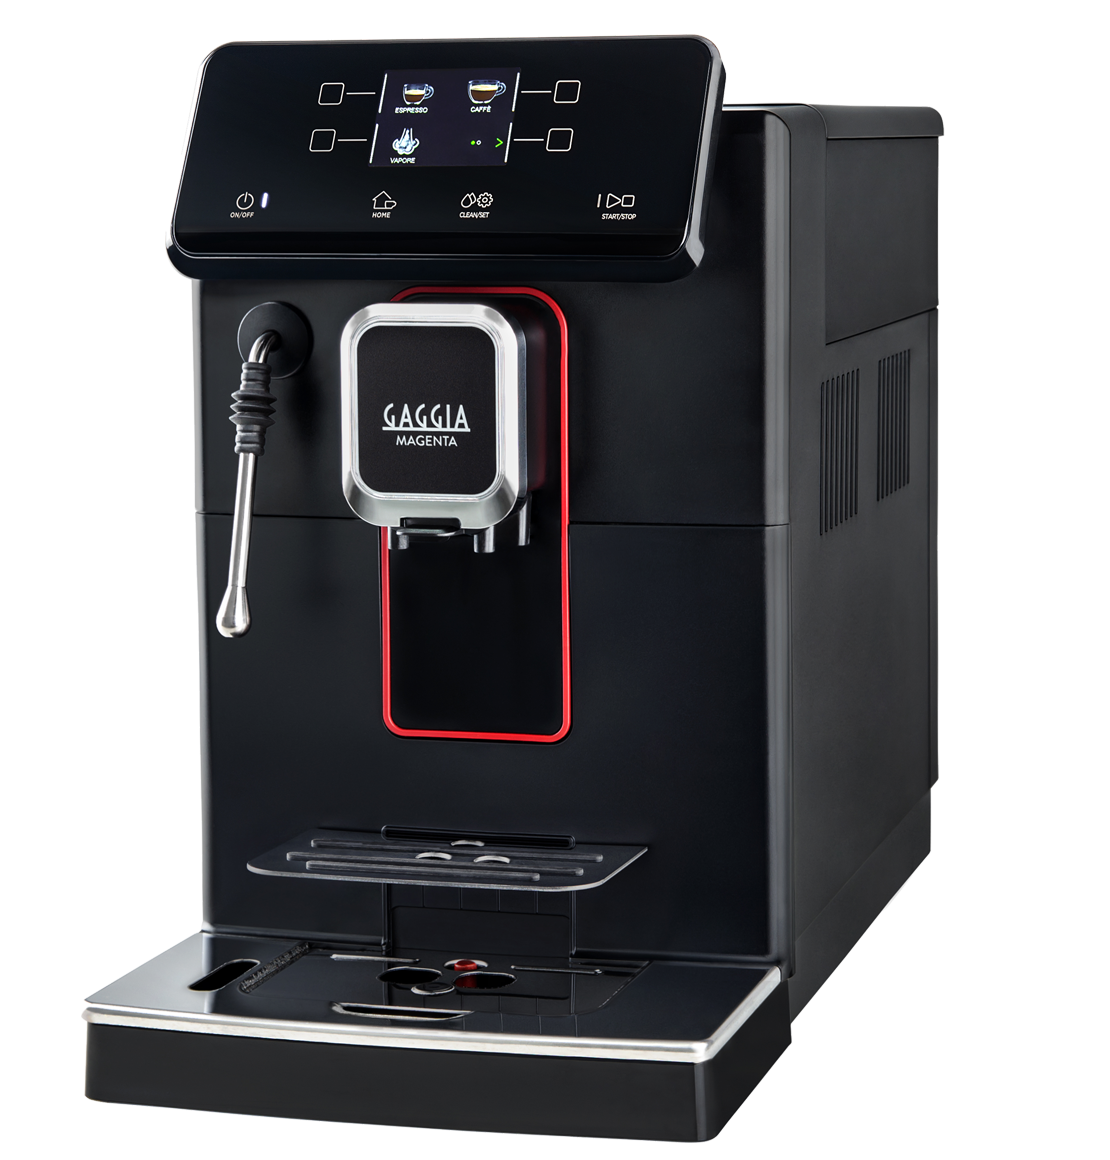 【５年保証+オリジナル特典付】【送料無料】GAGGIA ガジア 全自動コーヒーマシン MAGENTA PLUS